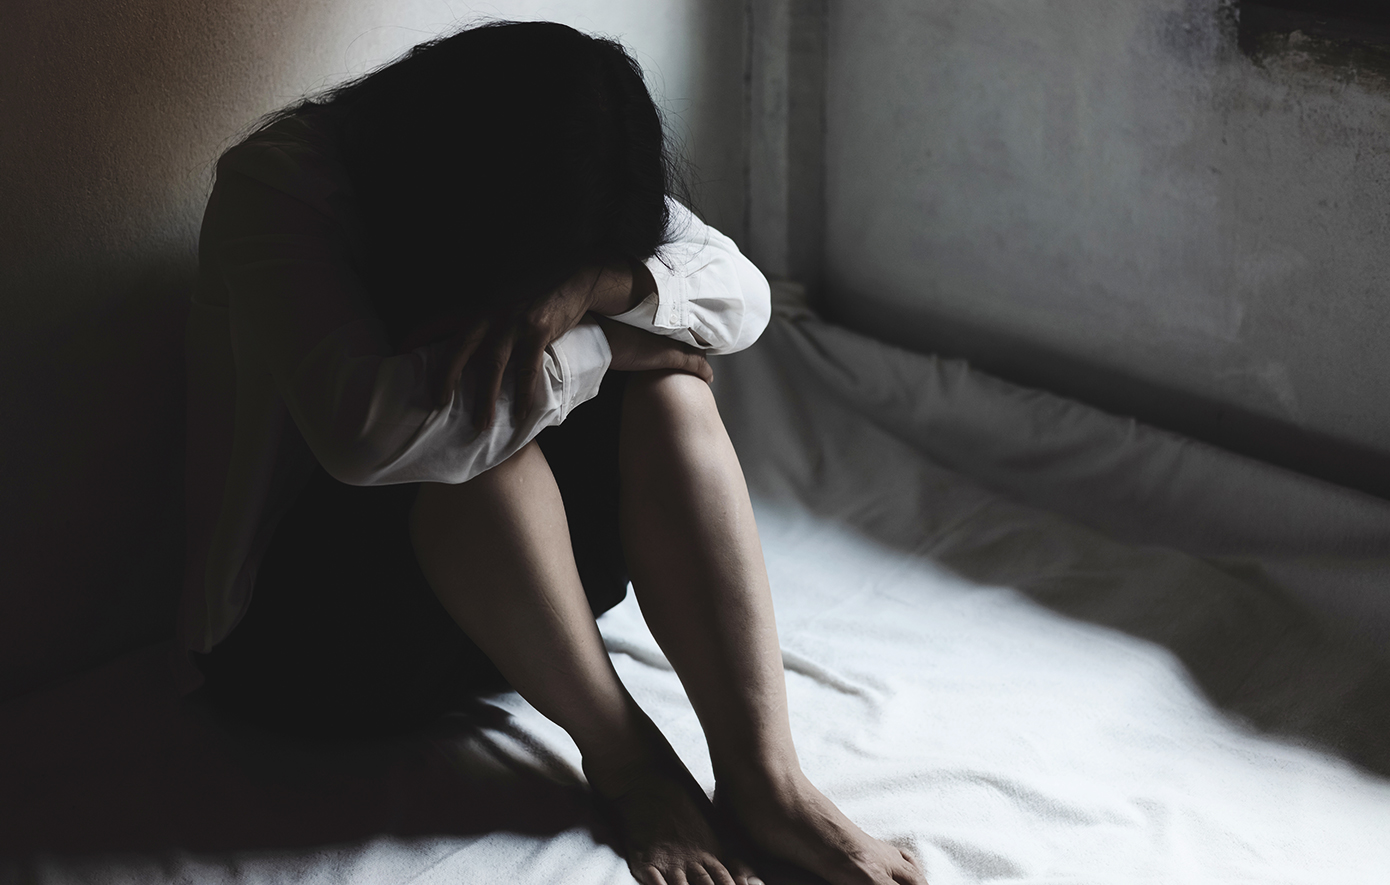 «Η μητέρα μου δεν ήξερε, ο πατριός μου το έκανε κρυφά» λέει η 25χρονη που κατήγγειλε τον πατριό της για βιασμό